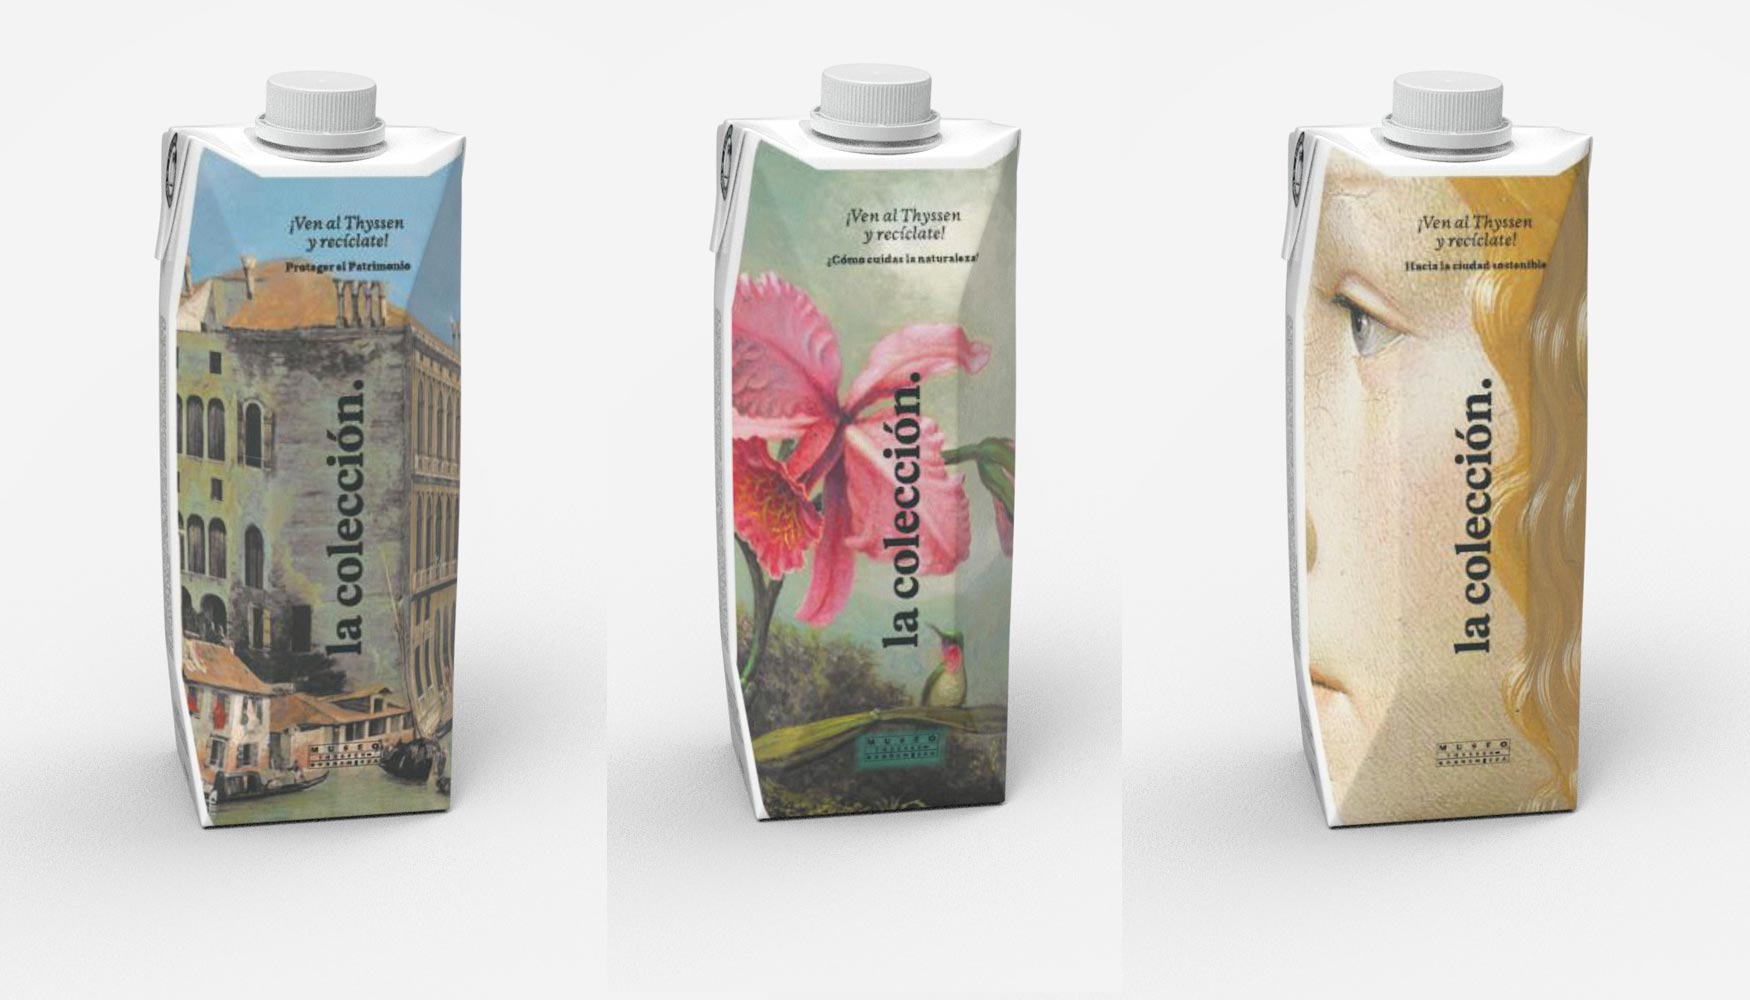 Envases de Tetra Pak personalizados para el Da Internacional de los Museos